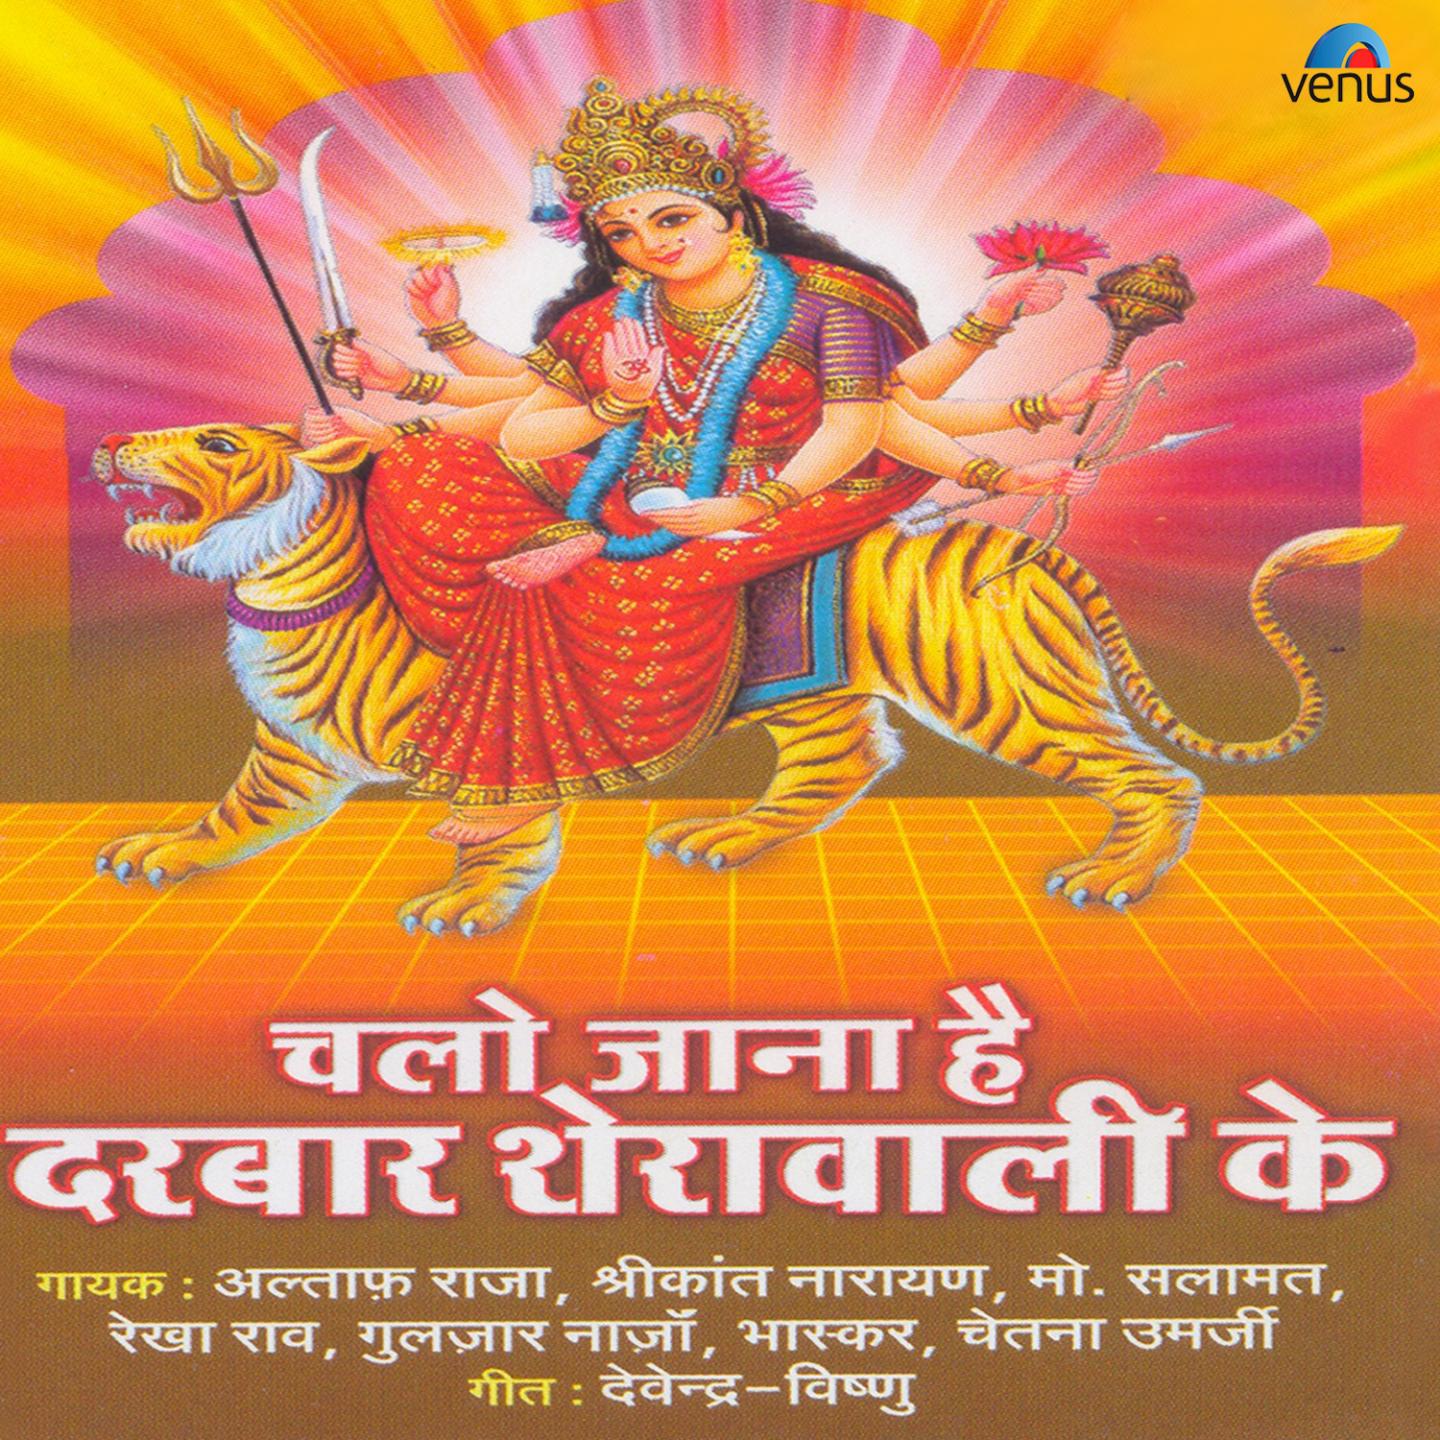 Bhaskar - Chalo Maiya Ke Dware Pe Chalke